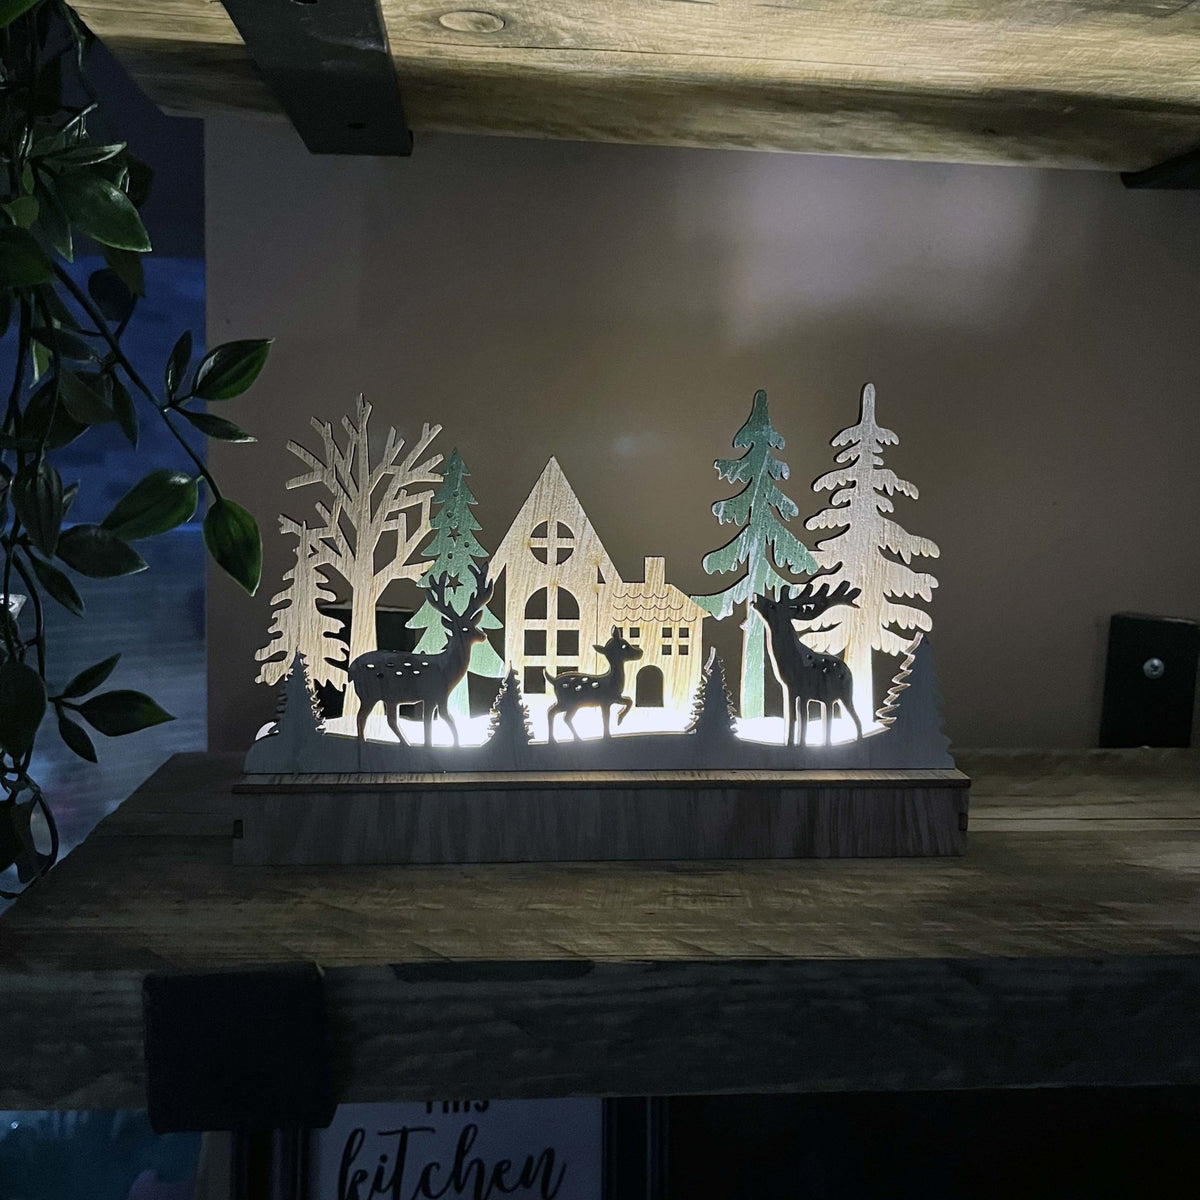 Reindeer & Trees LED Scene Decoration lit up on kitchen shelves